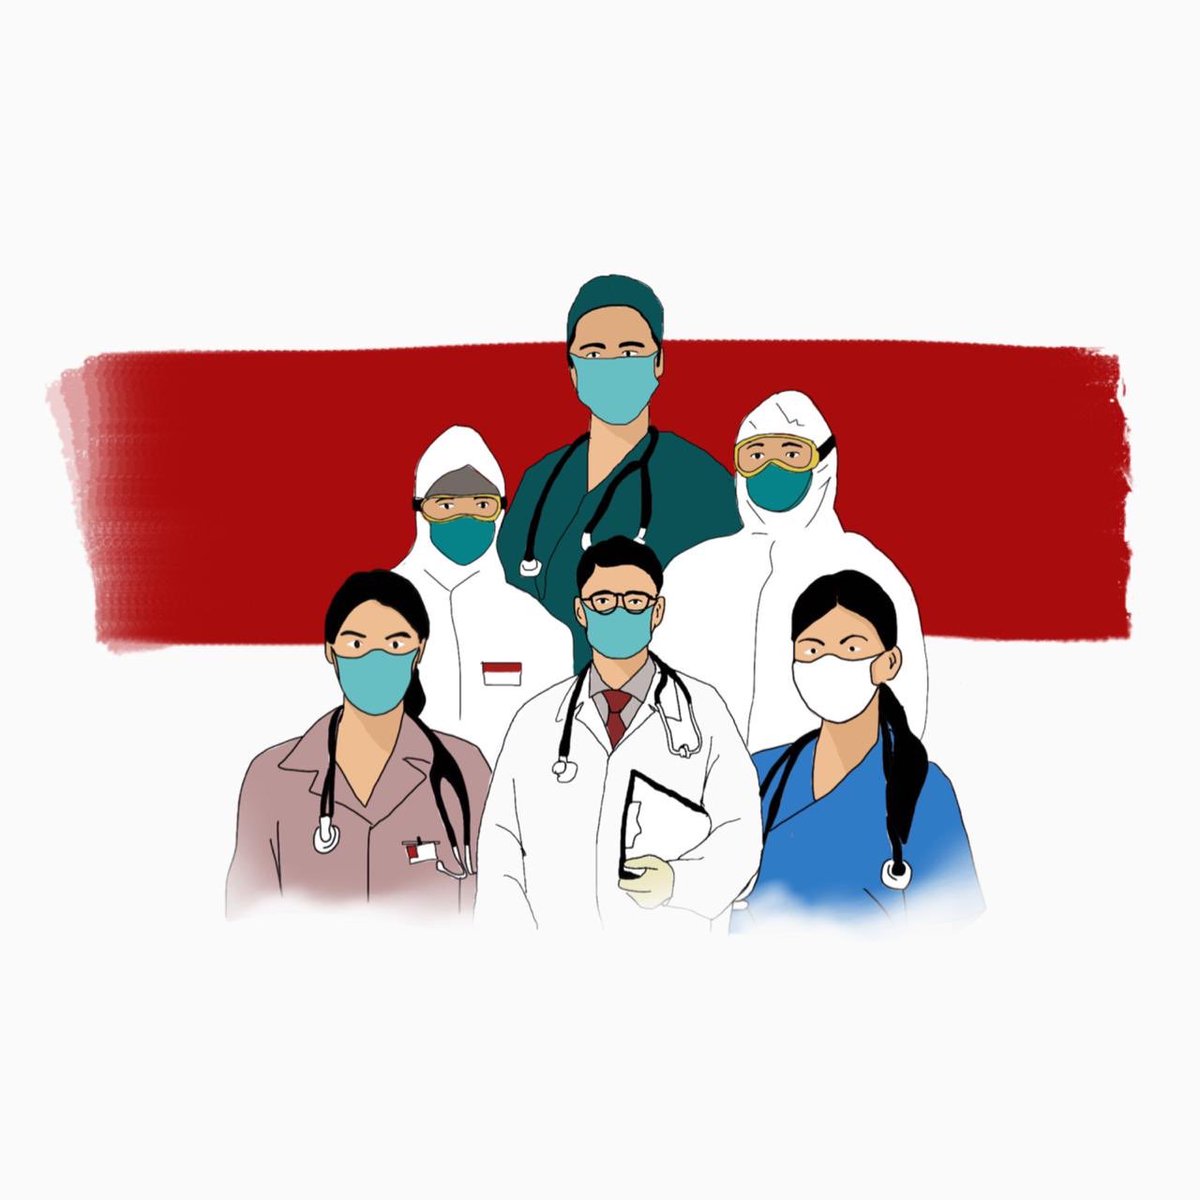 Menteri Luar Negeri Republik Indonesia On Twitter Pada Hari Kesehatan Internasional Ini Penghargaan Terbesar Kami Sampaikan Bagi Para Pahlawan Tanpa Tanda Jasa Para Dokter